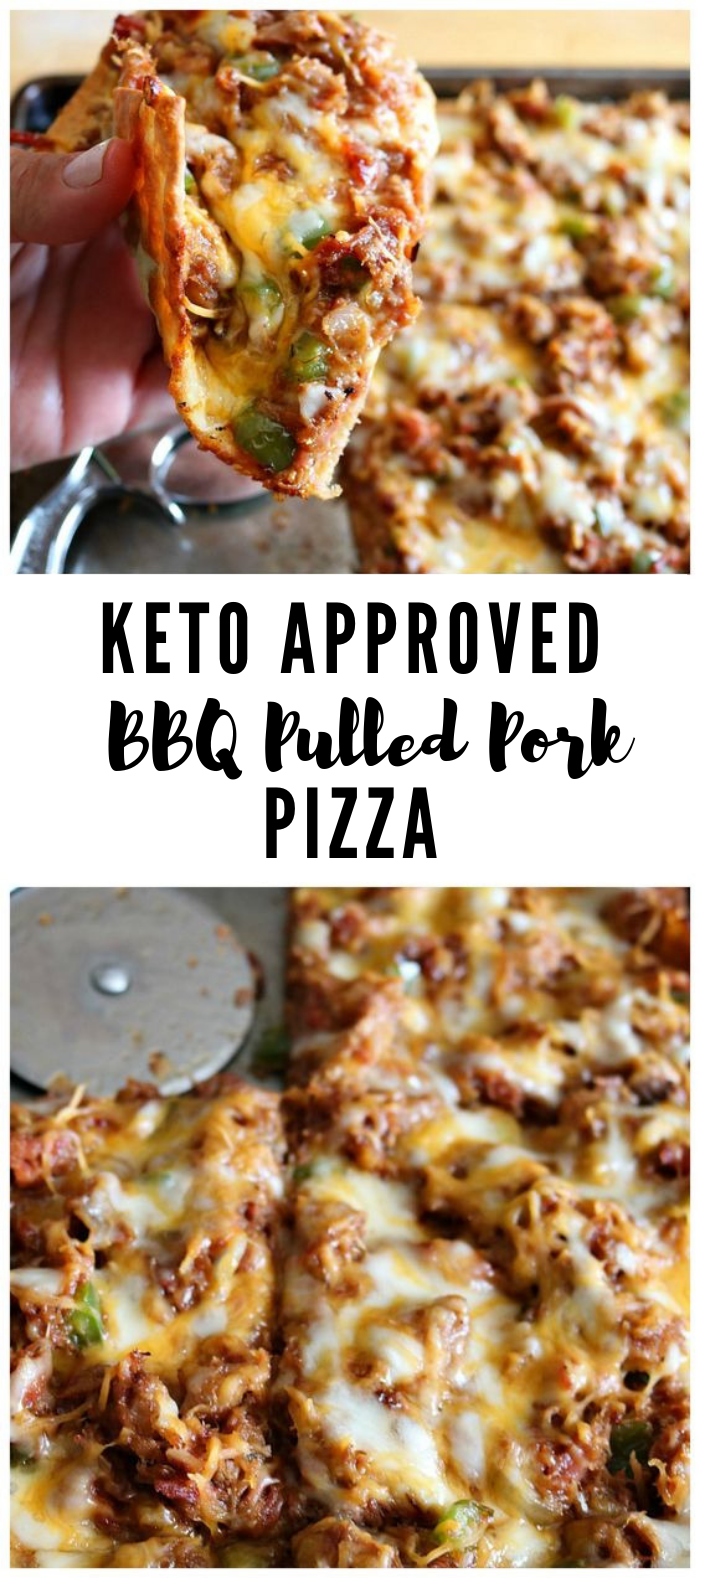 KETO FATHEAD PIZZA- BBQ PULLED PORK #Keto #Pizza